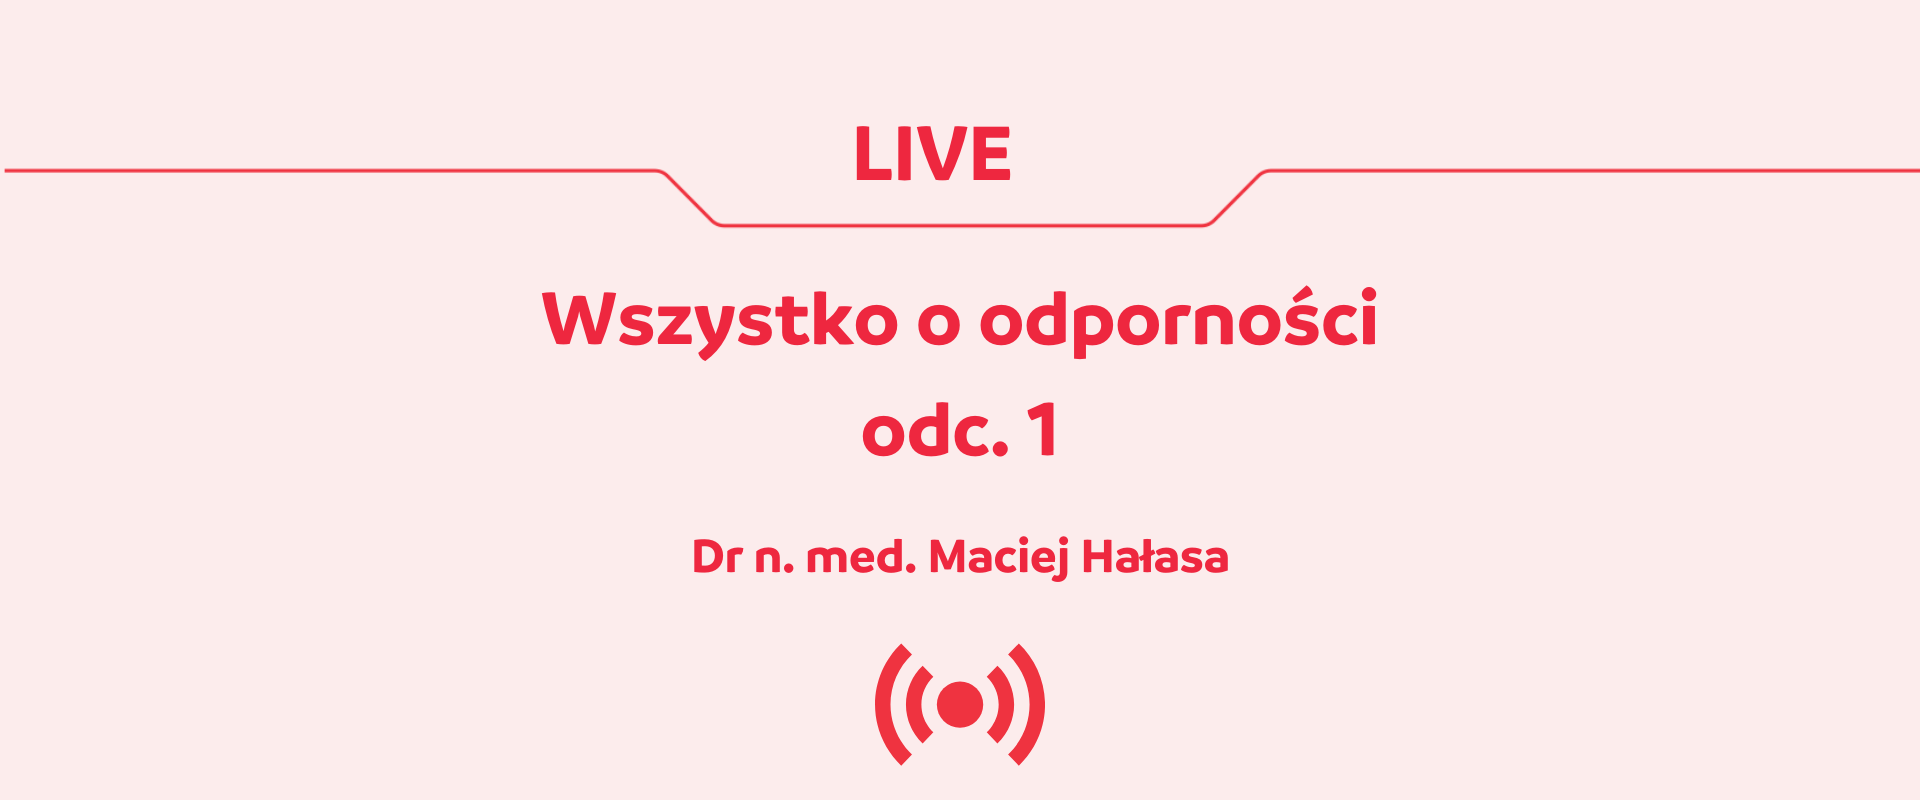 Genactiv Studio - wszystko o odporności odc. 1  Live Q&A z dr. Maciejem Hałasą